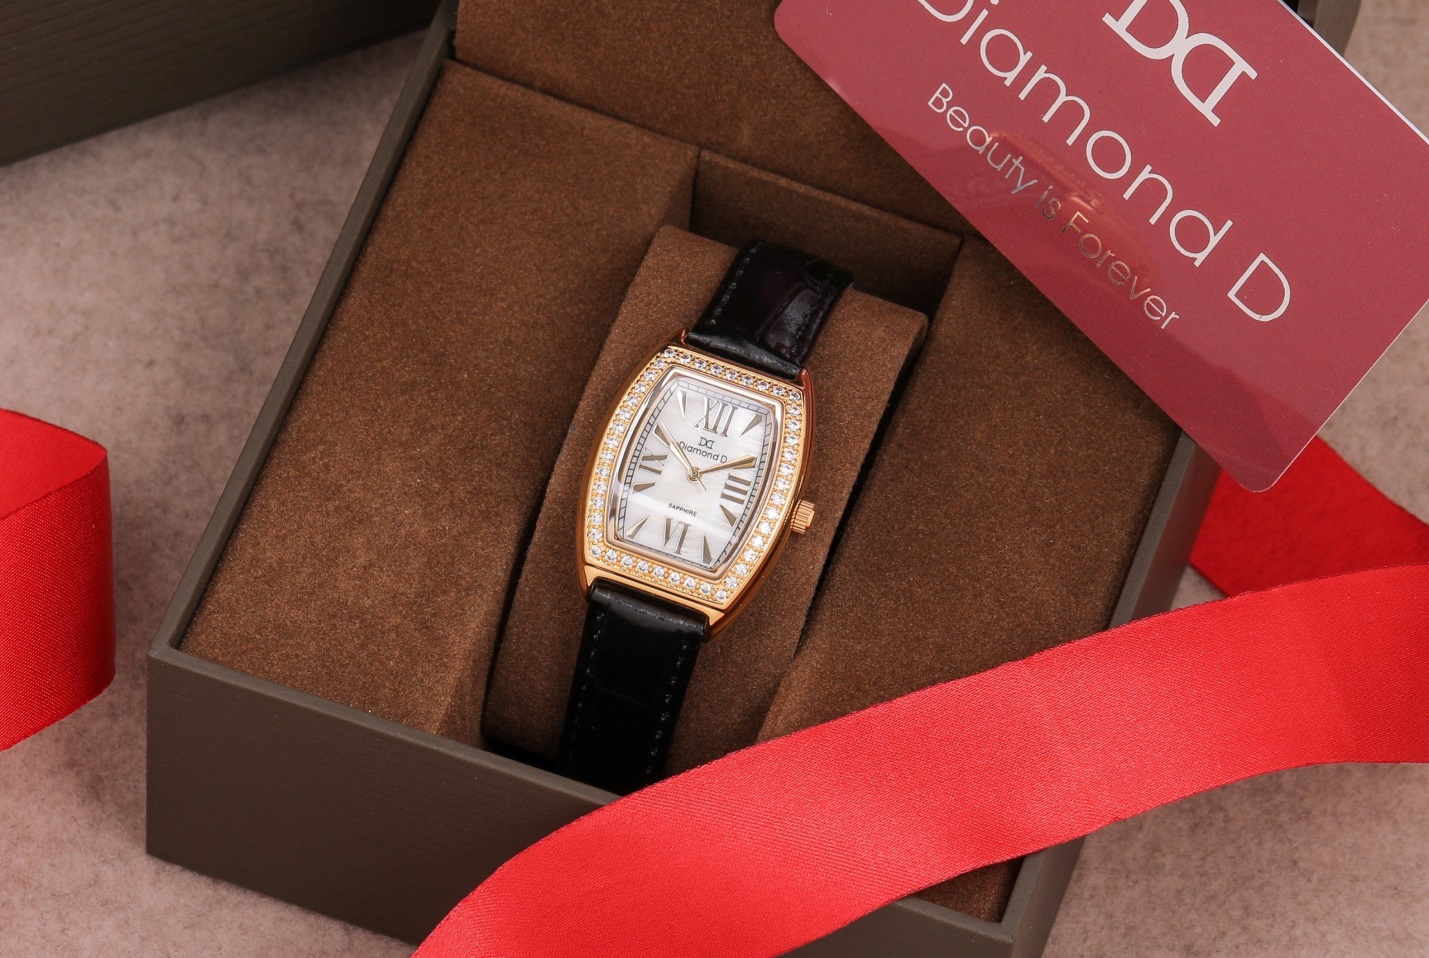 Đồng hồ Diamond D DM3635L5IG-B được kết hợp giữa vẻ đẹp cổ điển của dây da và sự sang trọng của kim cương nhân tạo, tạo nên sự quyền lực và nữ tính, phù hợp cho những cô nàng muốn thể hiện phong cách riêng của mình